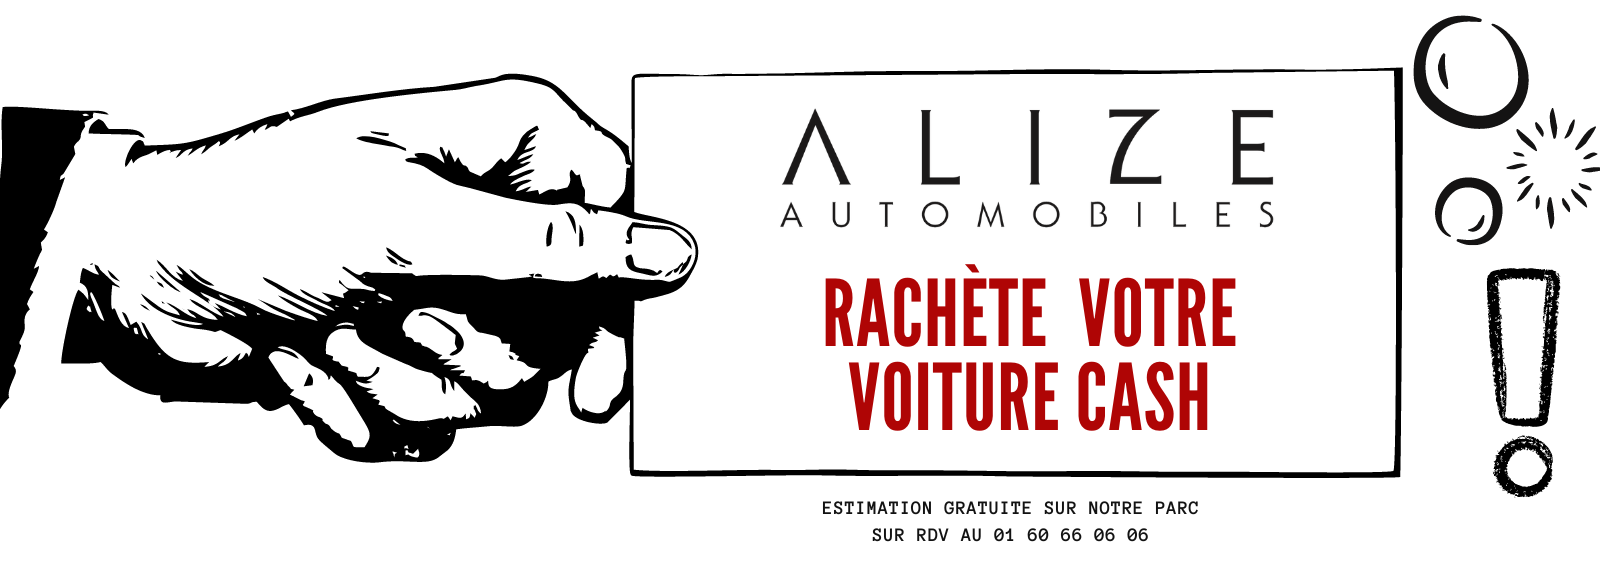 Alizé Automobiles rachète votre voiture Cash !